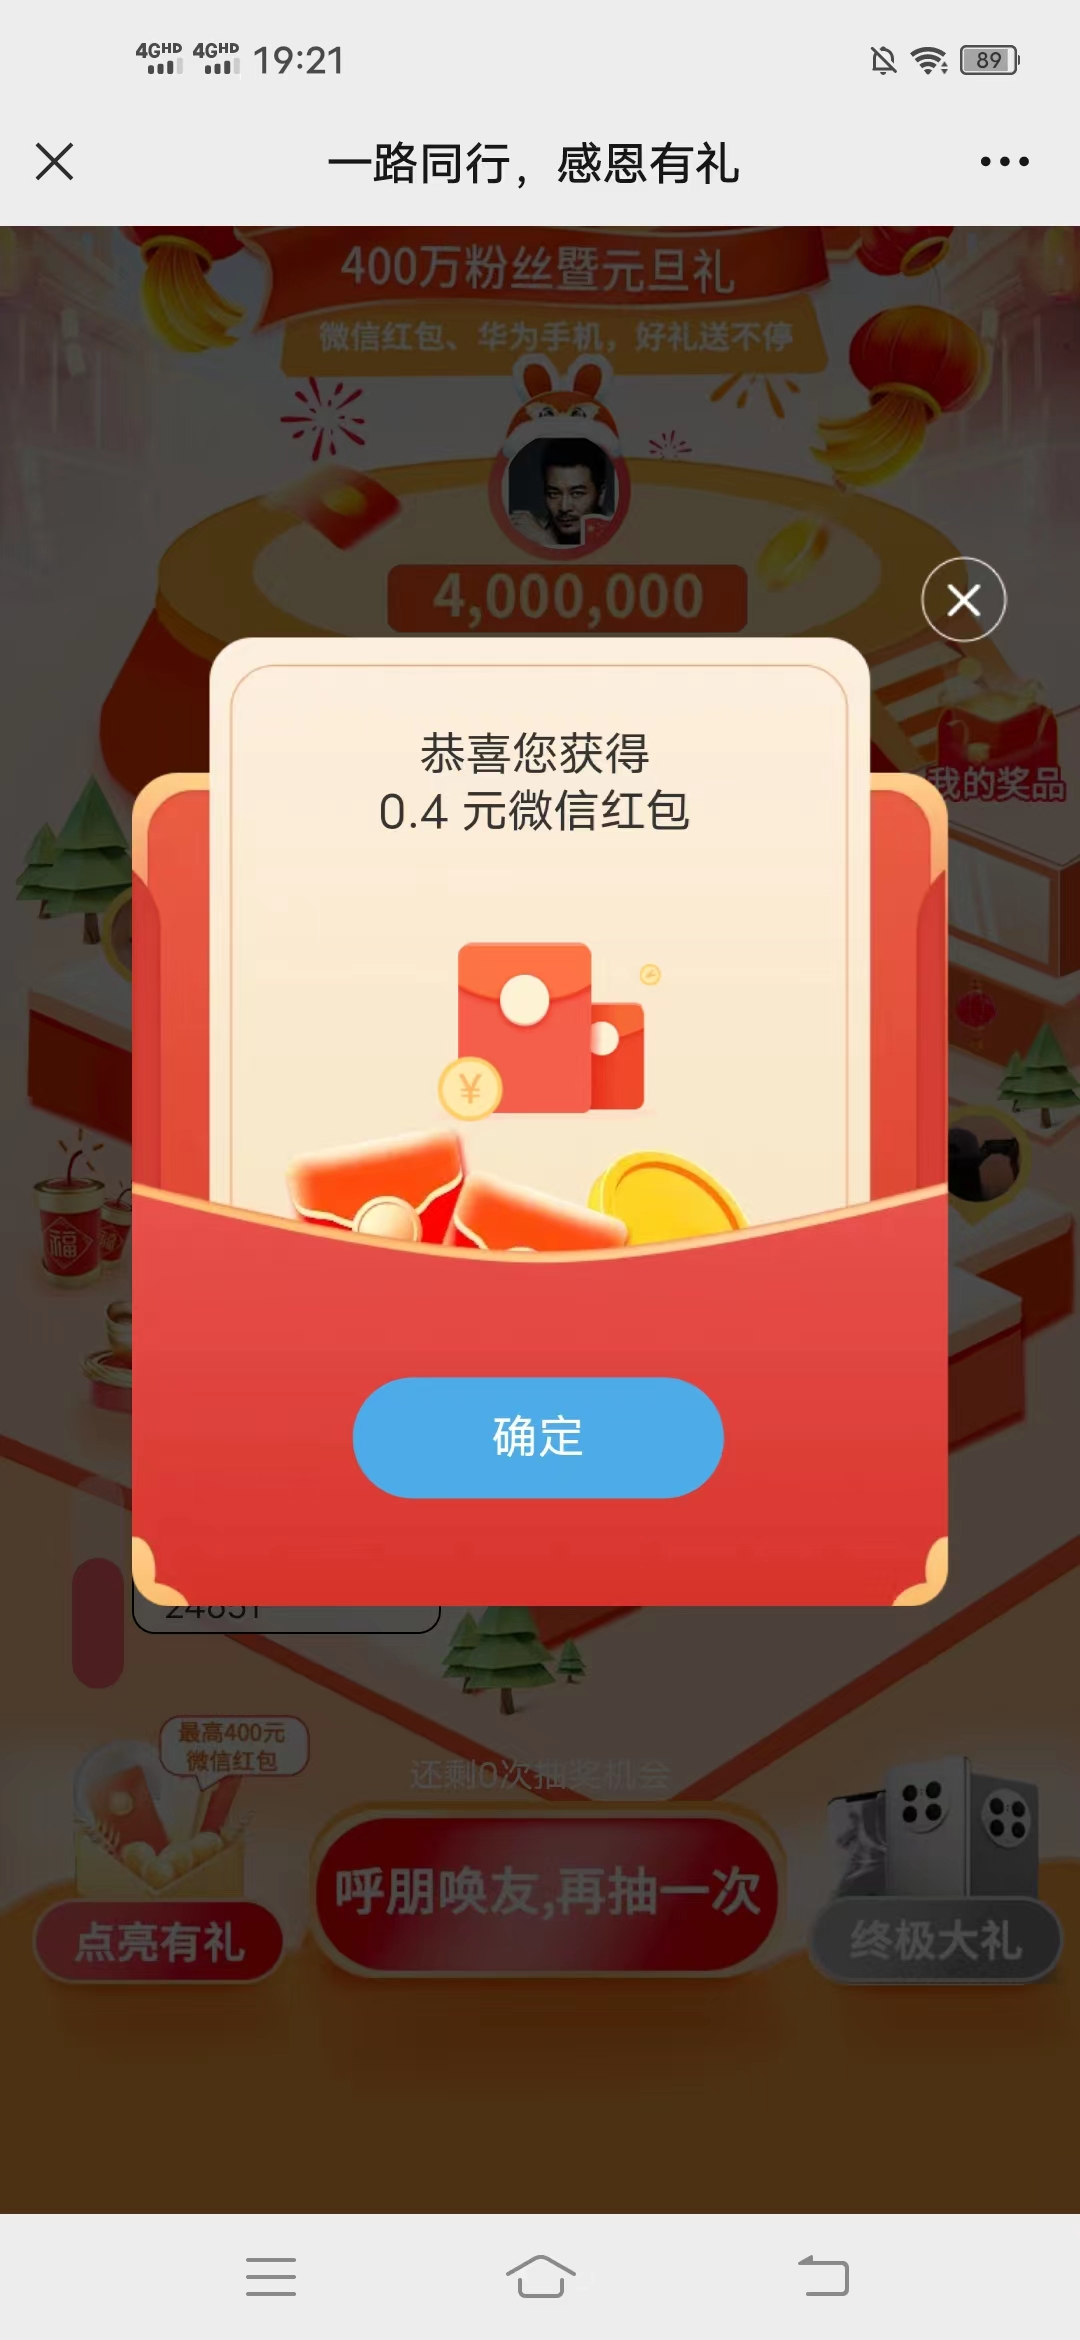 中国银行感恩有礼活动，简单关注赚0.4元微信红包  第1张